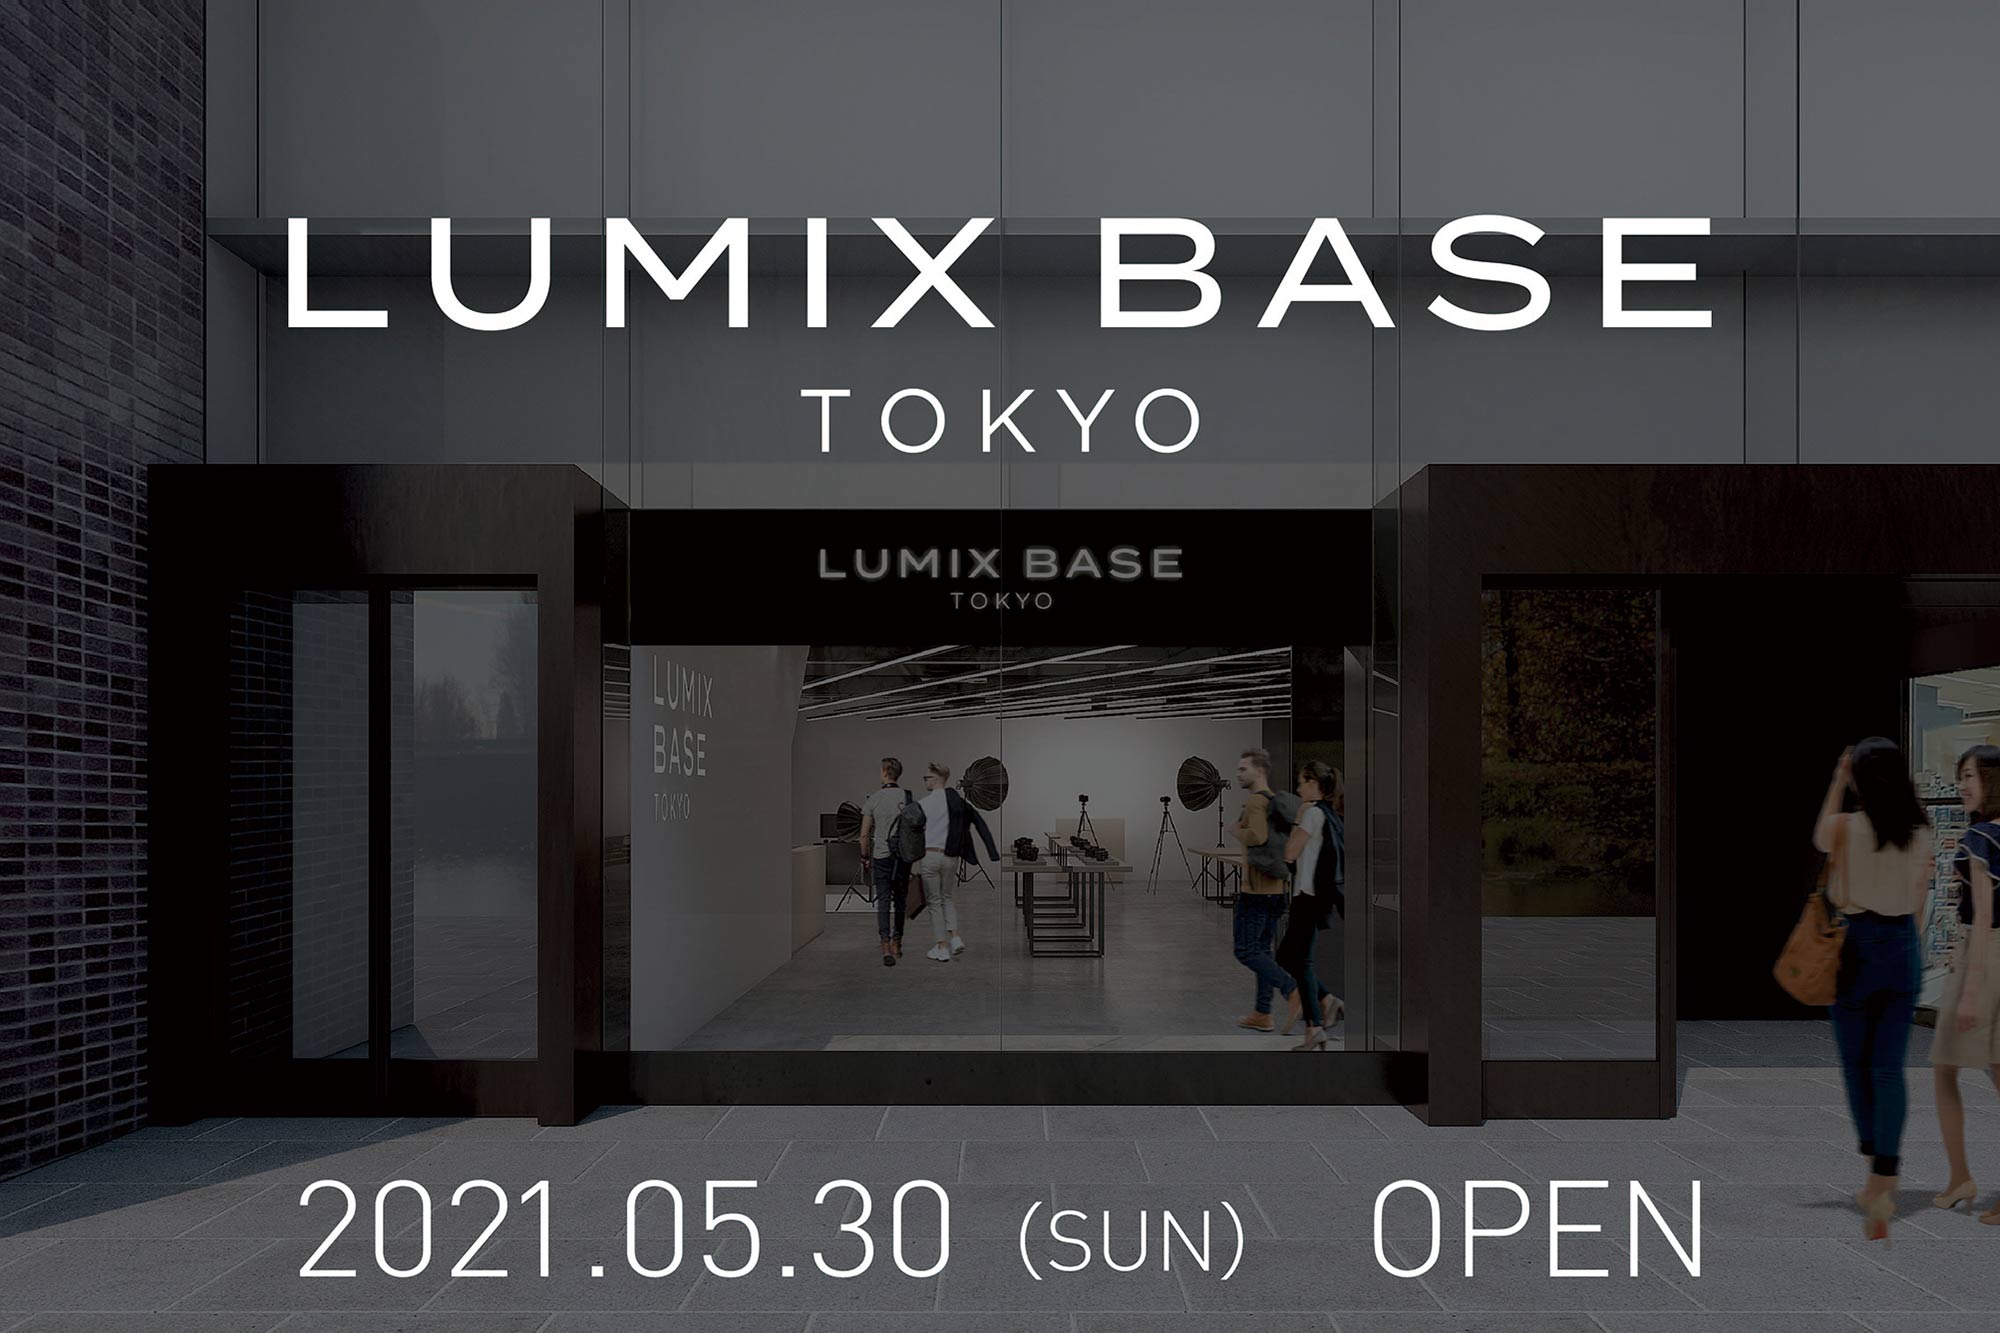 パナソニック 新拠点 Lumix Base Tokyo を東京 青山に5月30日にオープン Video Salon